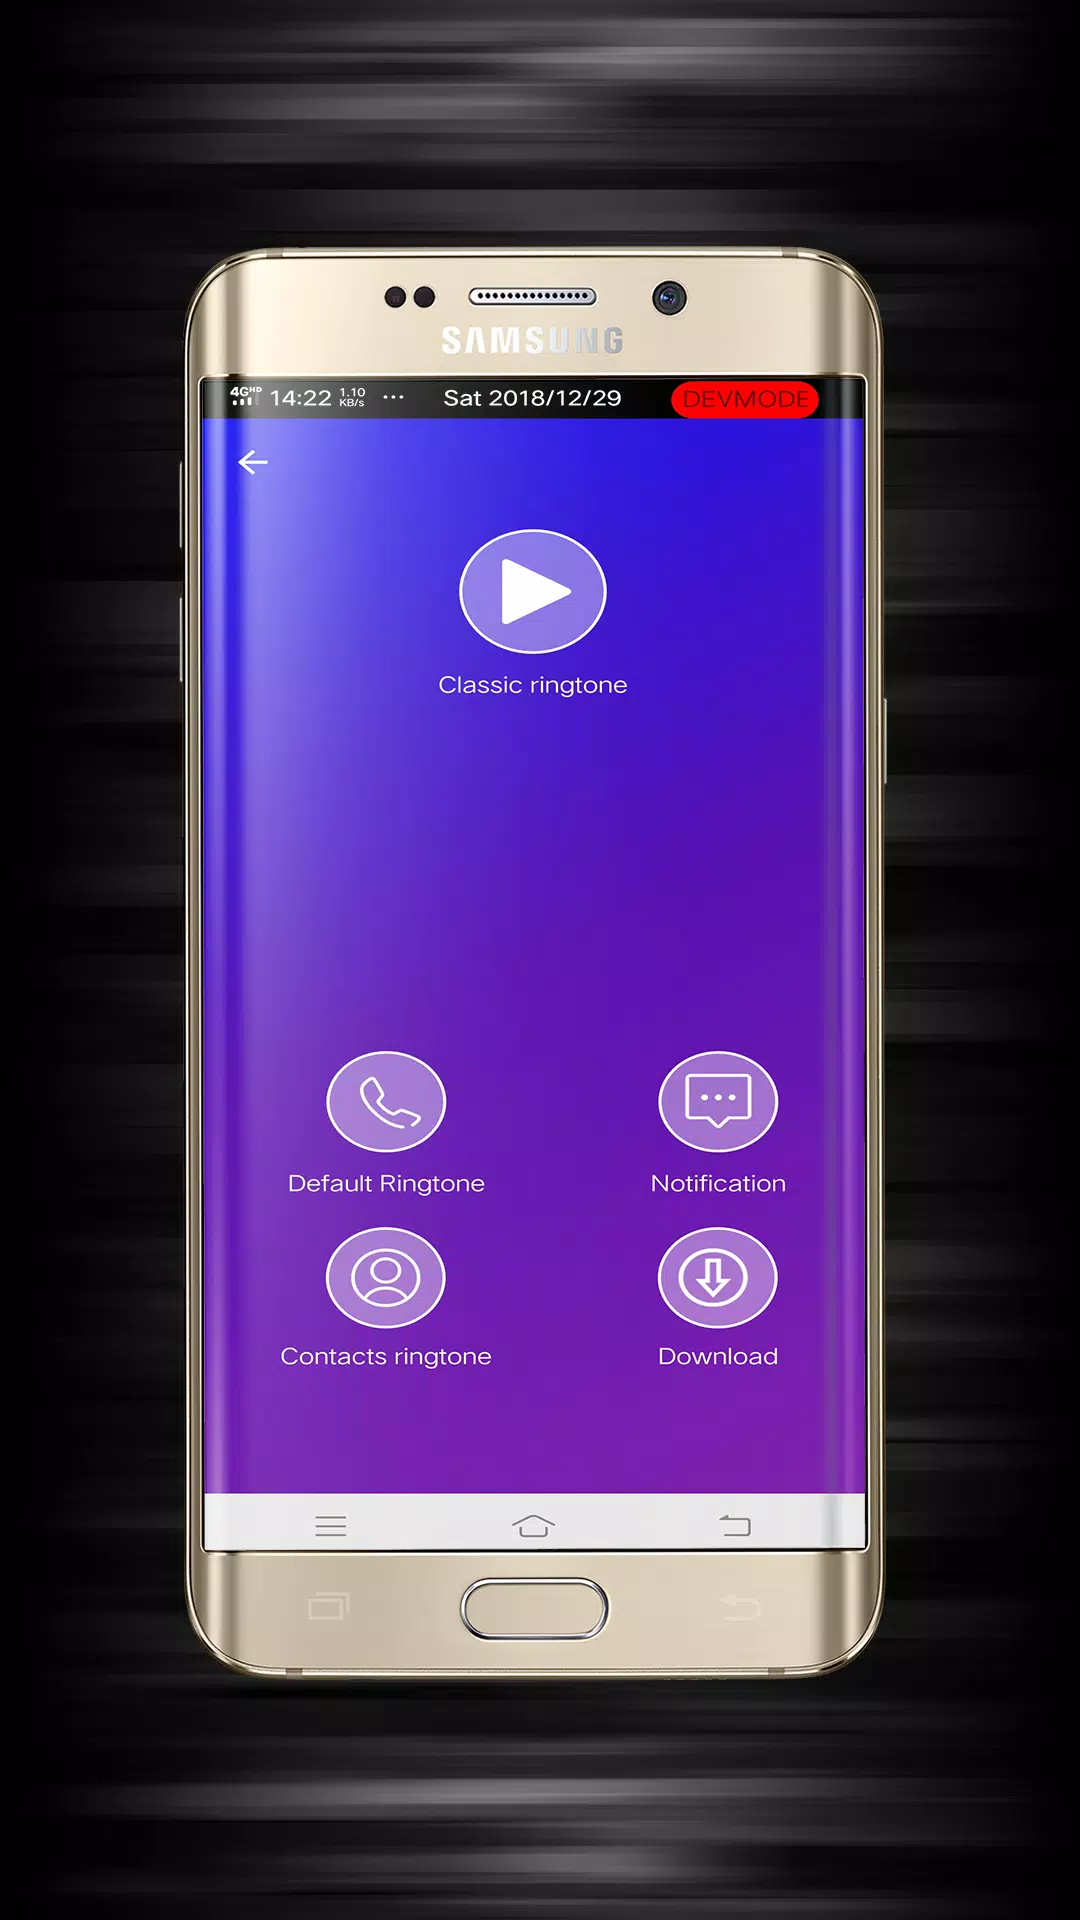 أعلى نغمات Samsung Galaxy S9 S10 APK للاندرويد تنزيل